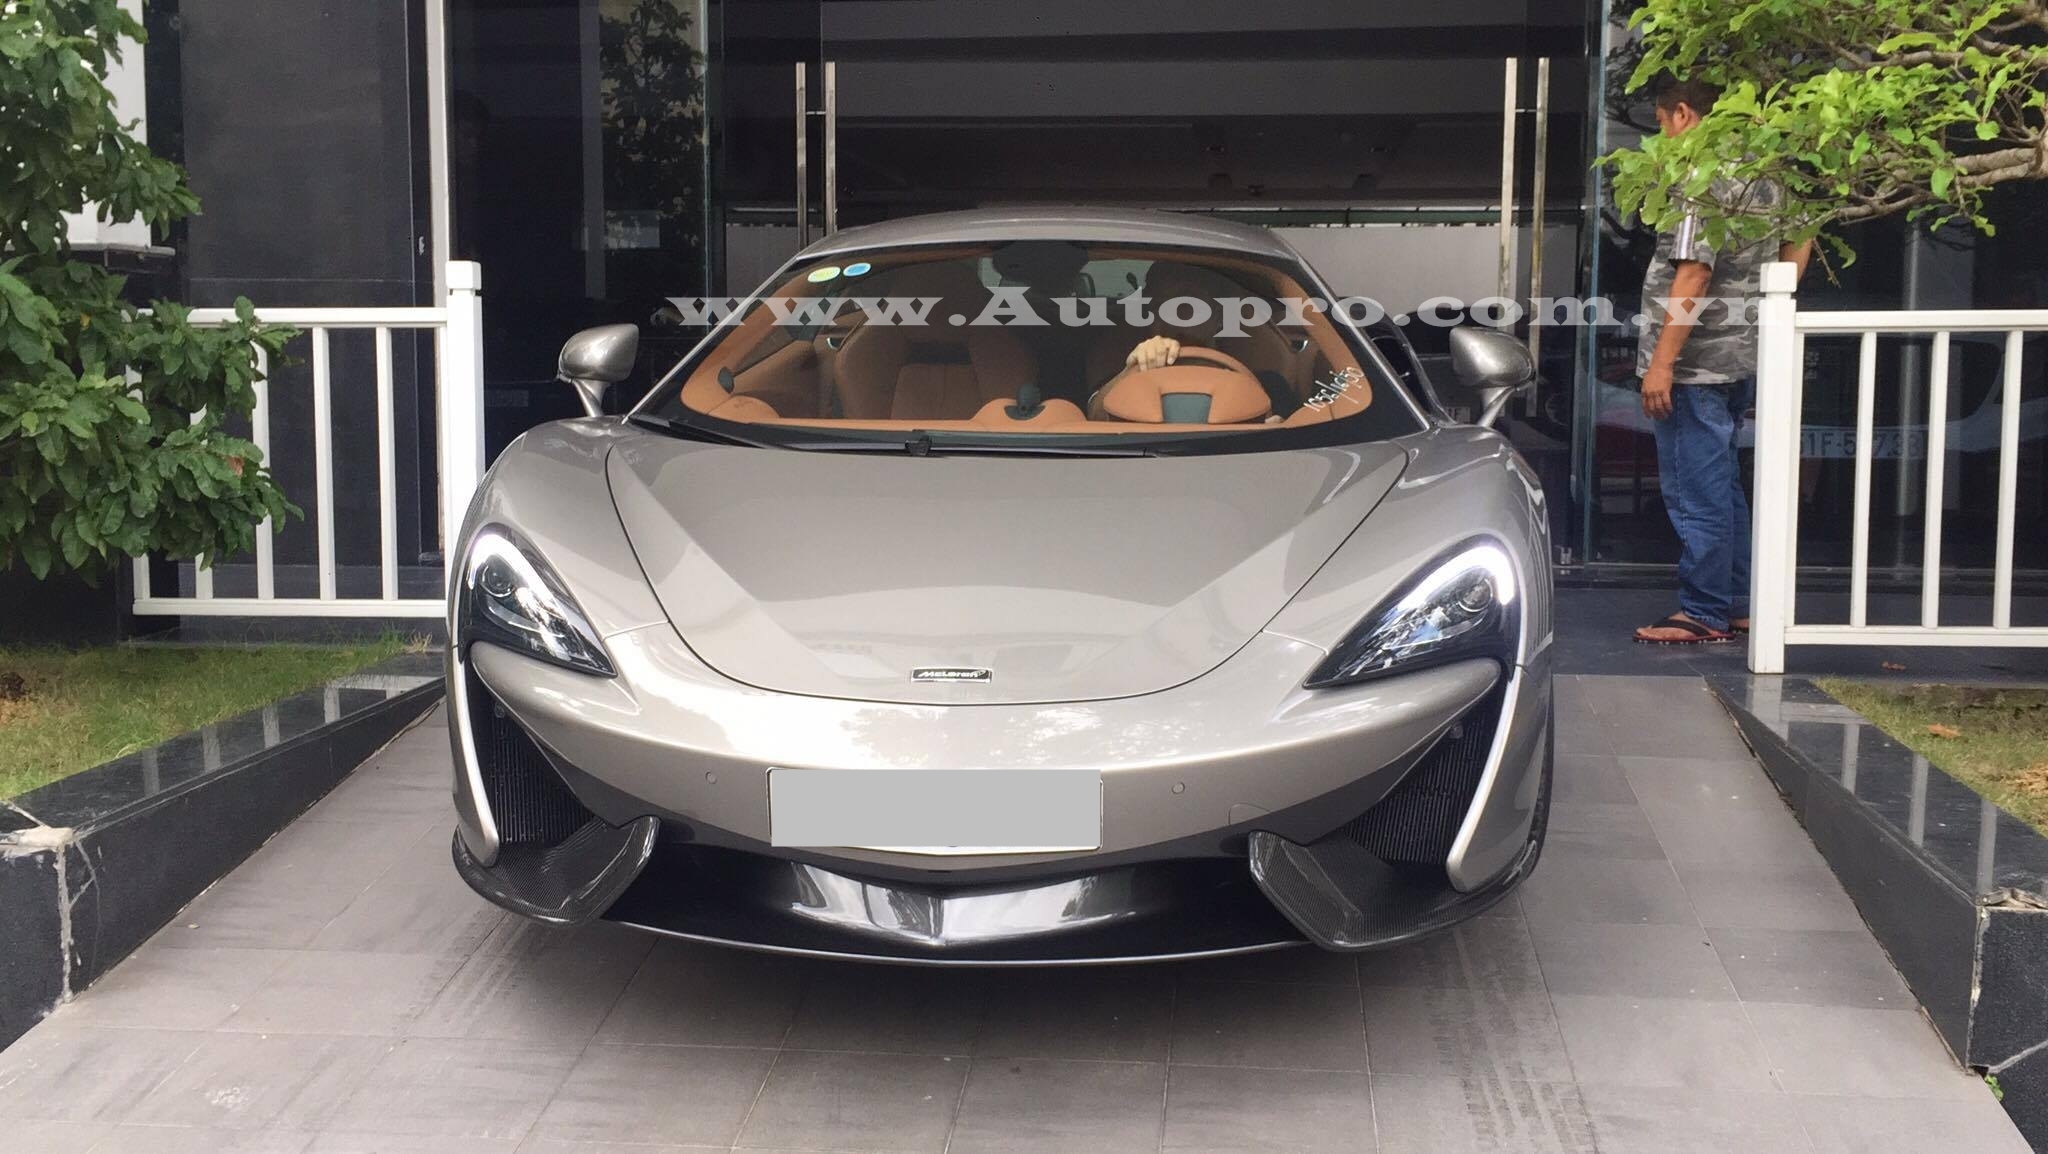 
Vào trưa qua, giới mê xe lại một lần nữa dậy sóng hình ảnh chiếc siêu xe McLaren 570S xuất hiện trong garage của doanh nhân Quốc Cường.
